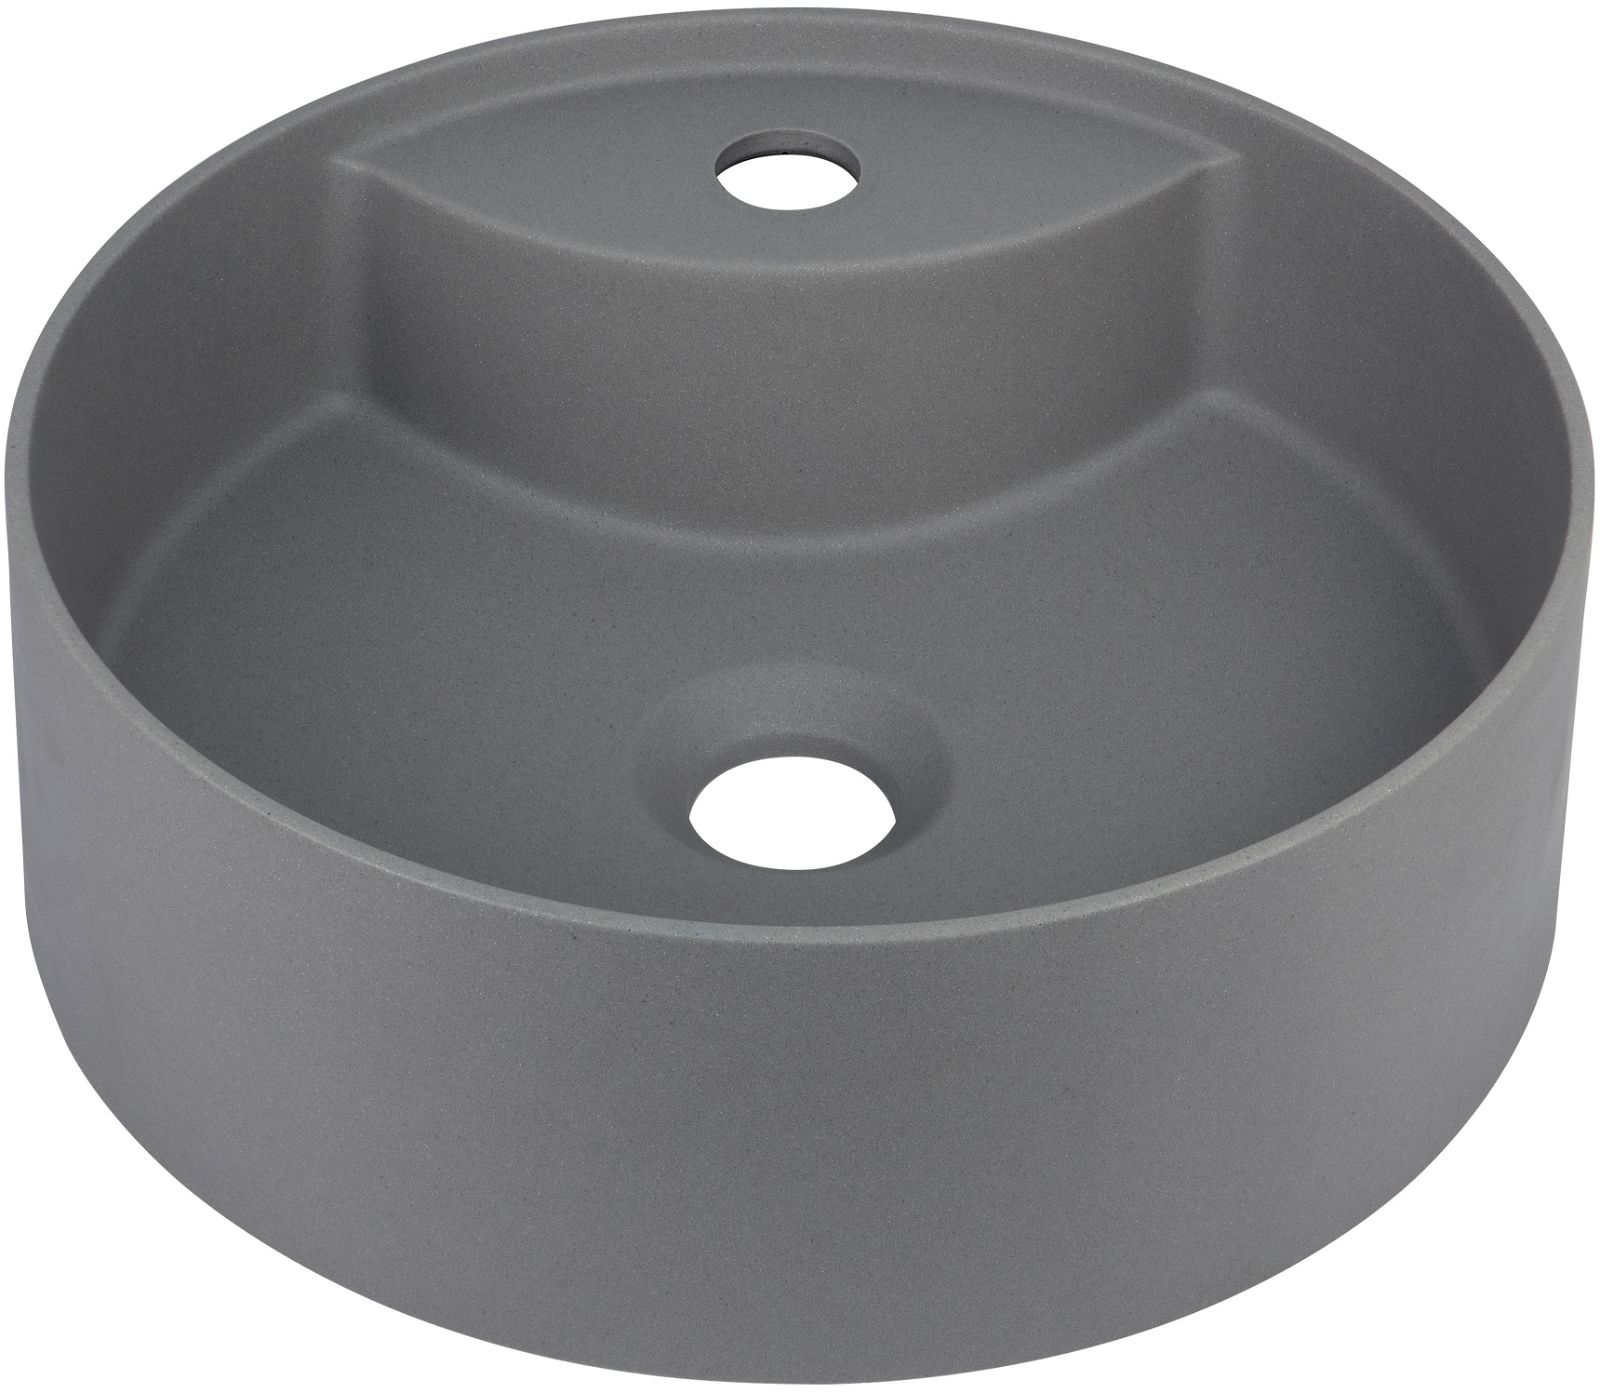 Granite washbasin, countertop - with tap shelf - CQS_TU4B - Główne zdjęcie produktowe